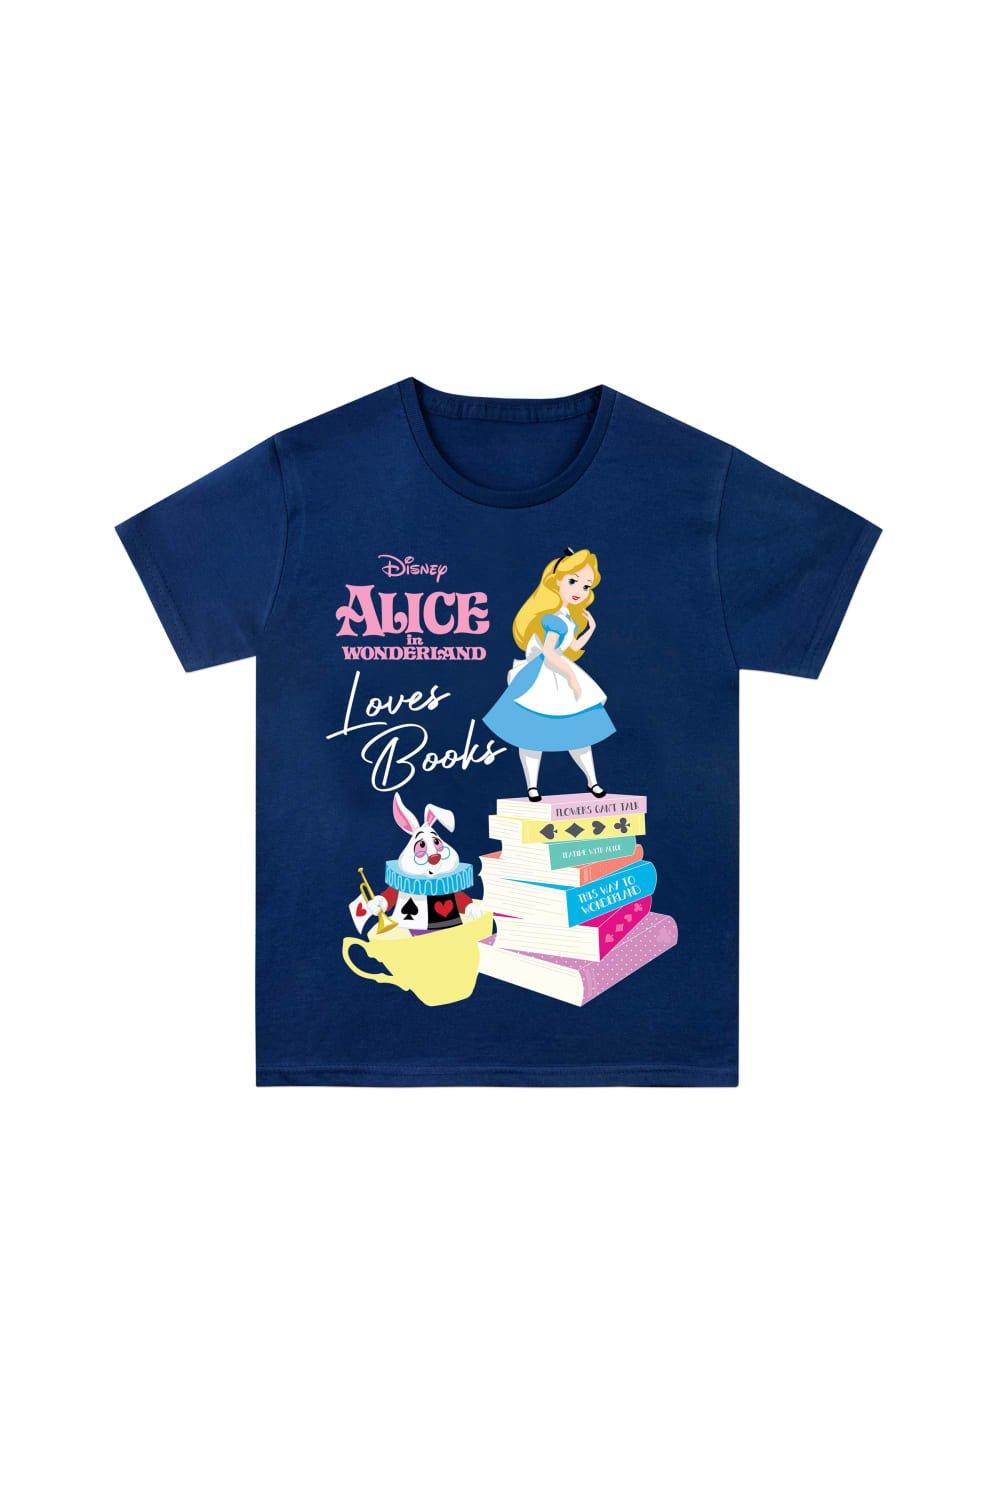 Alice in Wonderland World Book Day T-Shirt